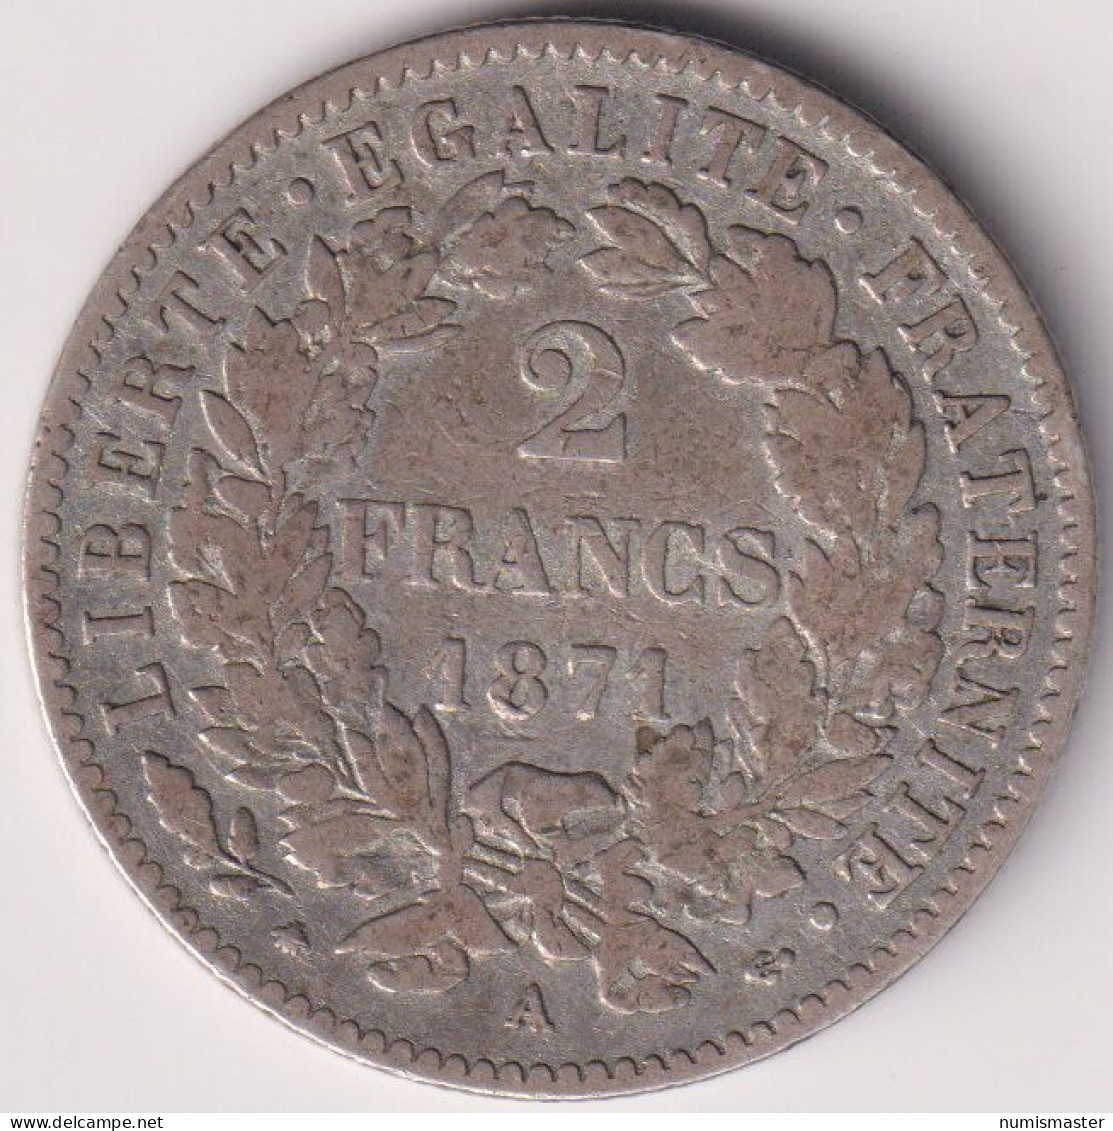 FRANCE , 2 FRANCS 1871 A - 1871 Pariser Kommune